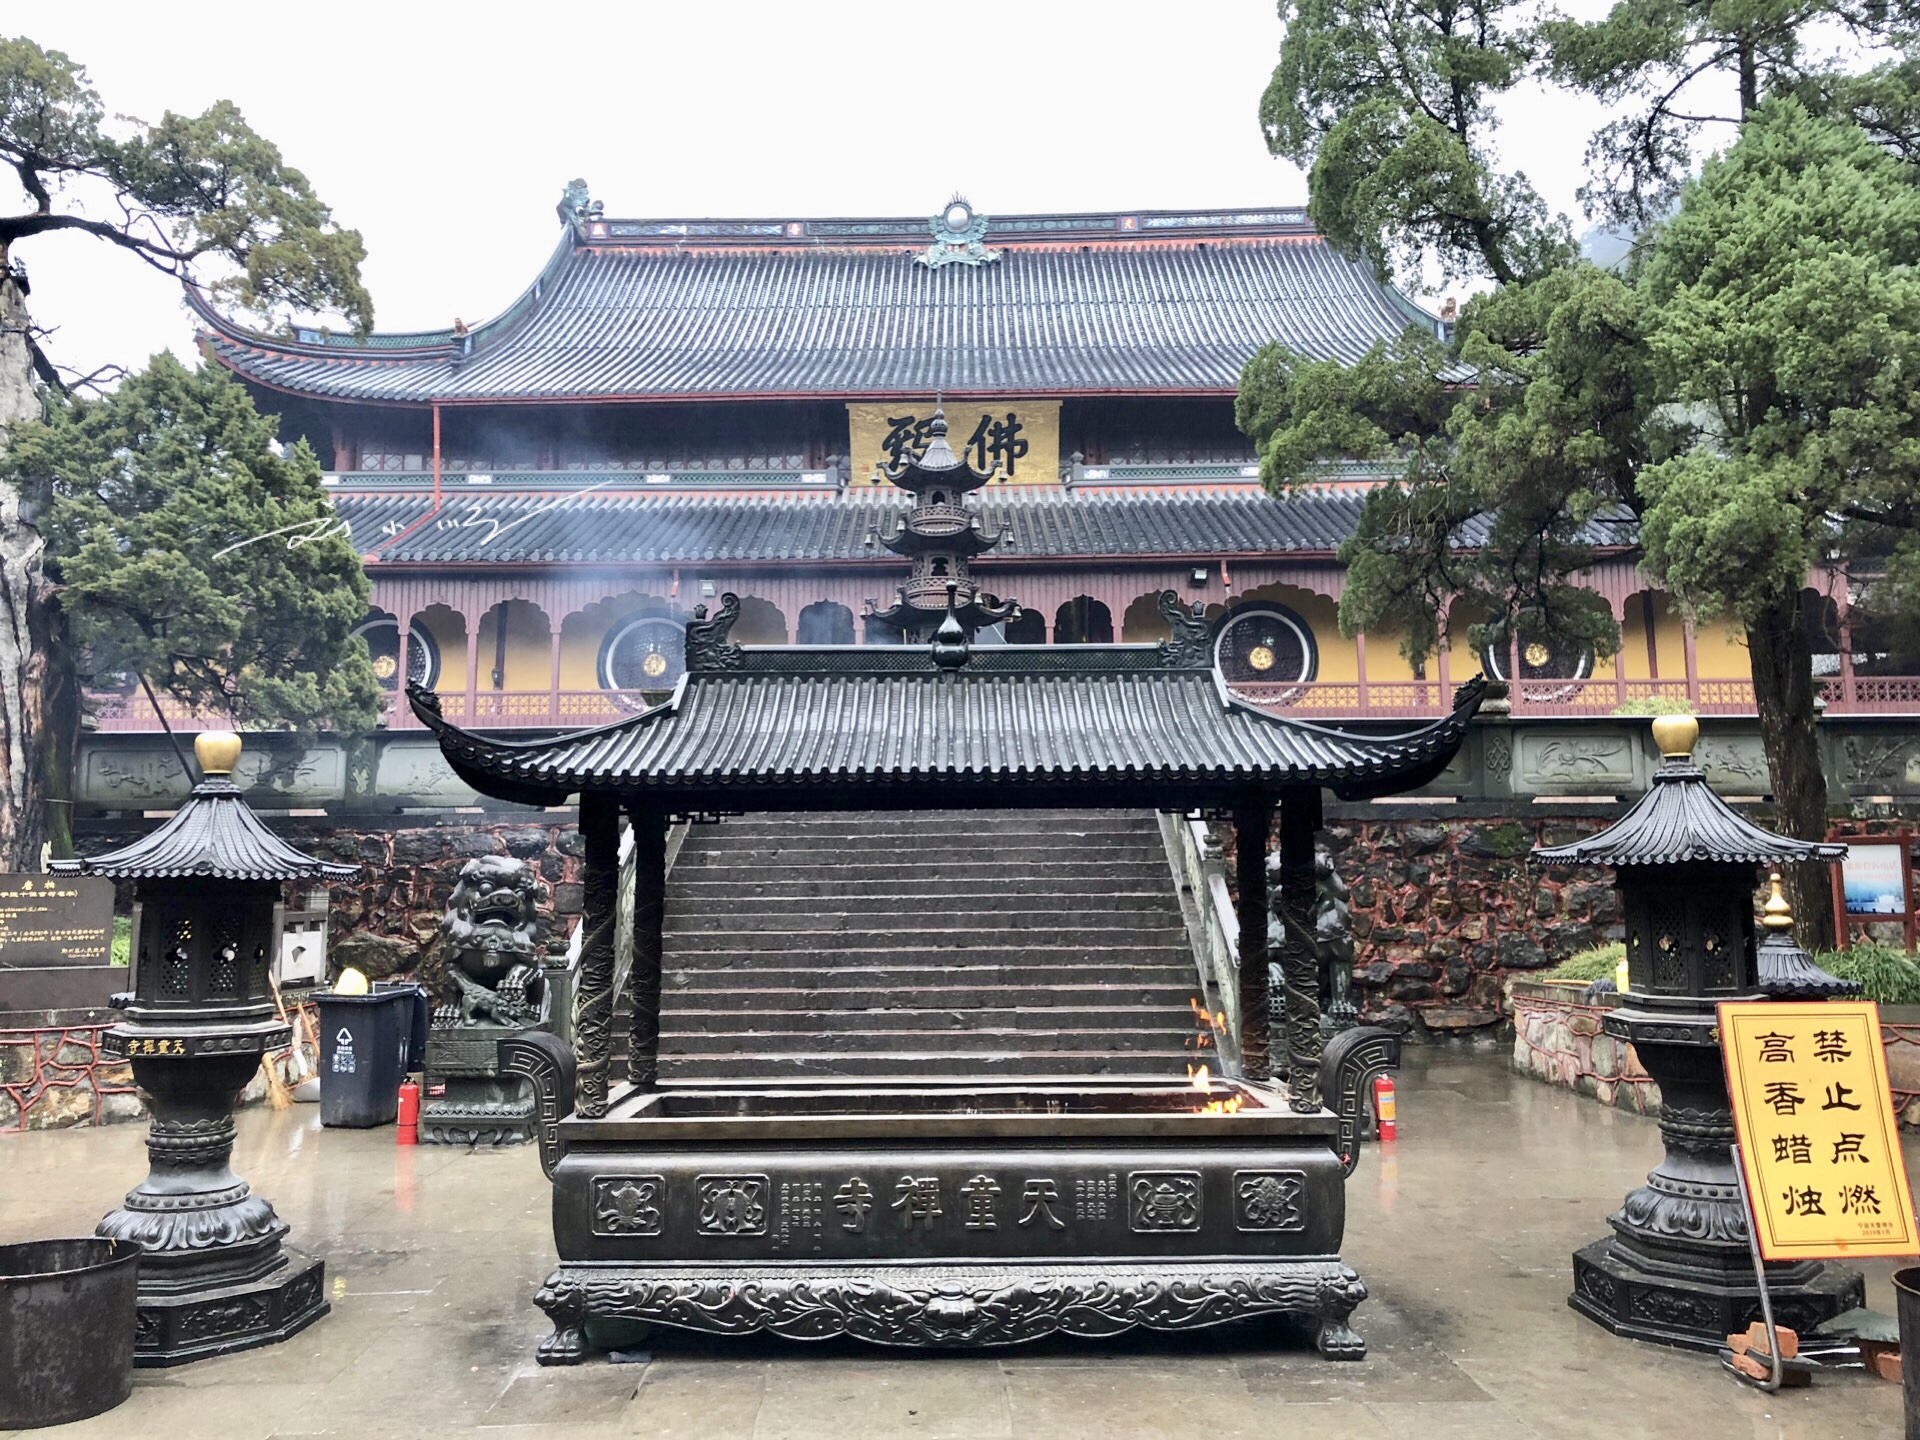 宁波最著名的寺庙,已有1700多年历史,还是日本佛教曹洞宗的祖庭